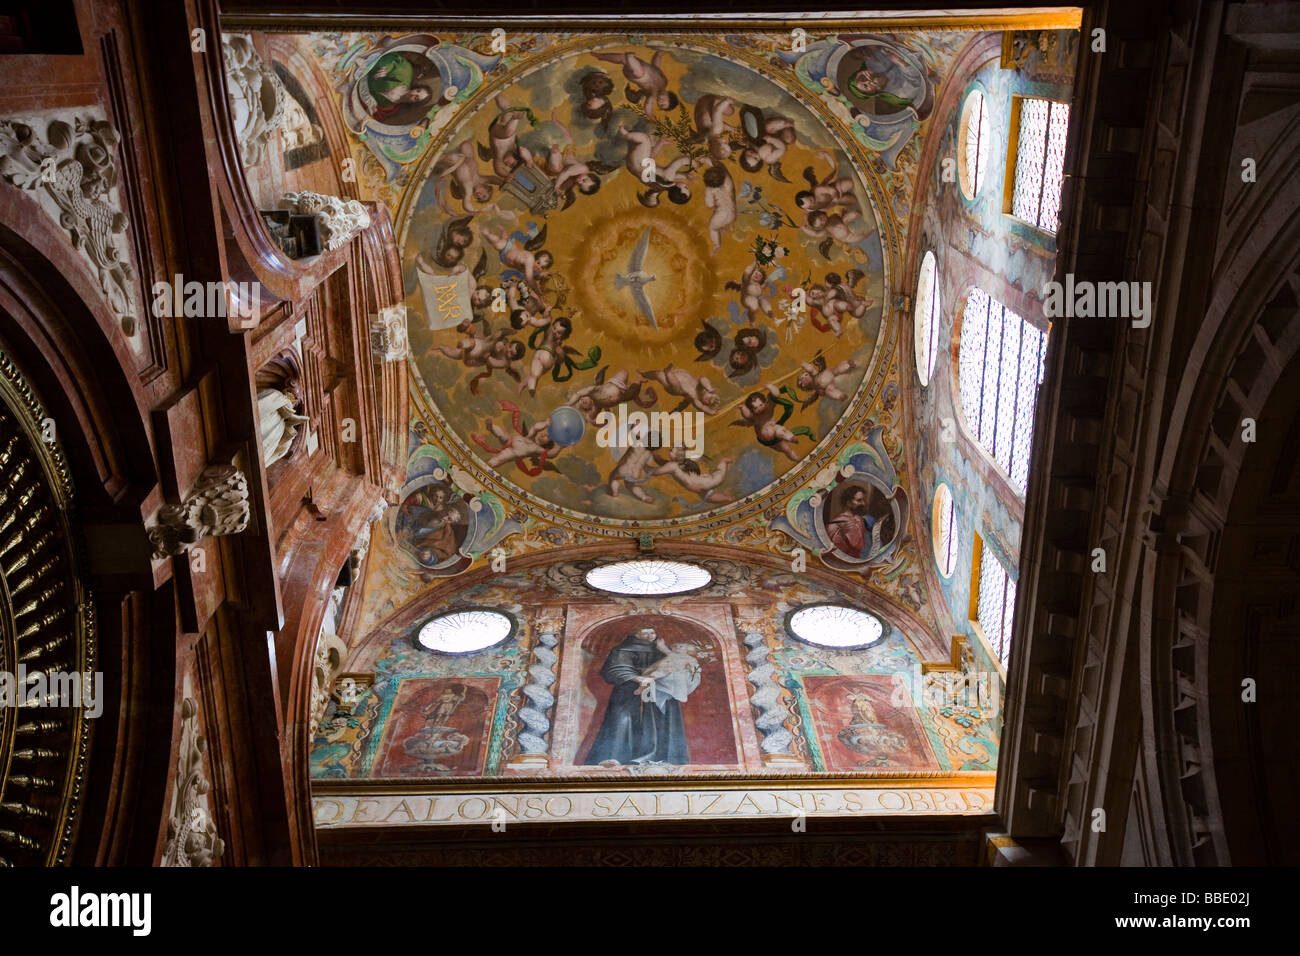 Art catholique à l'intérieur de la cathédrale ou de la Mezquita de Cordoue Espagne Banque D'Images